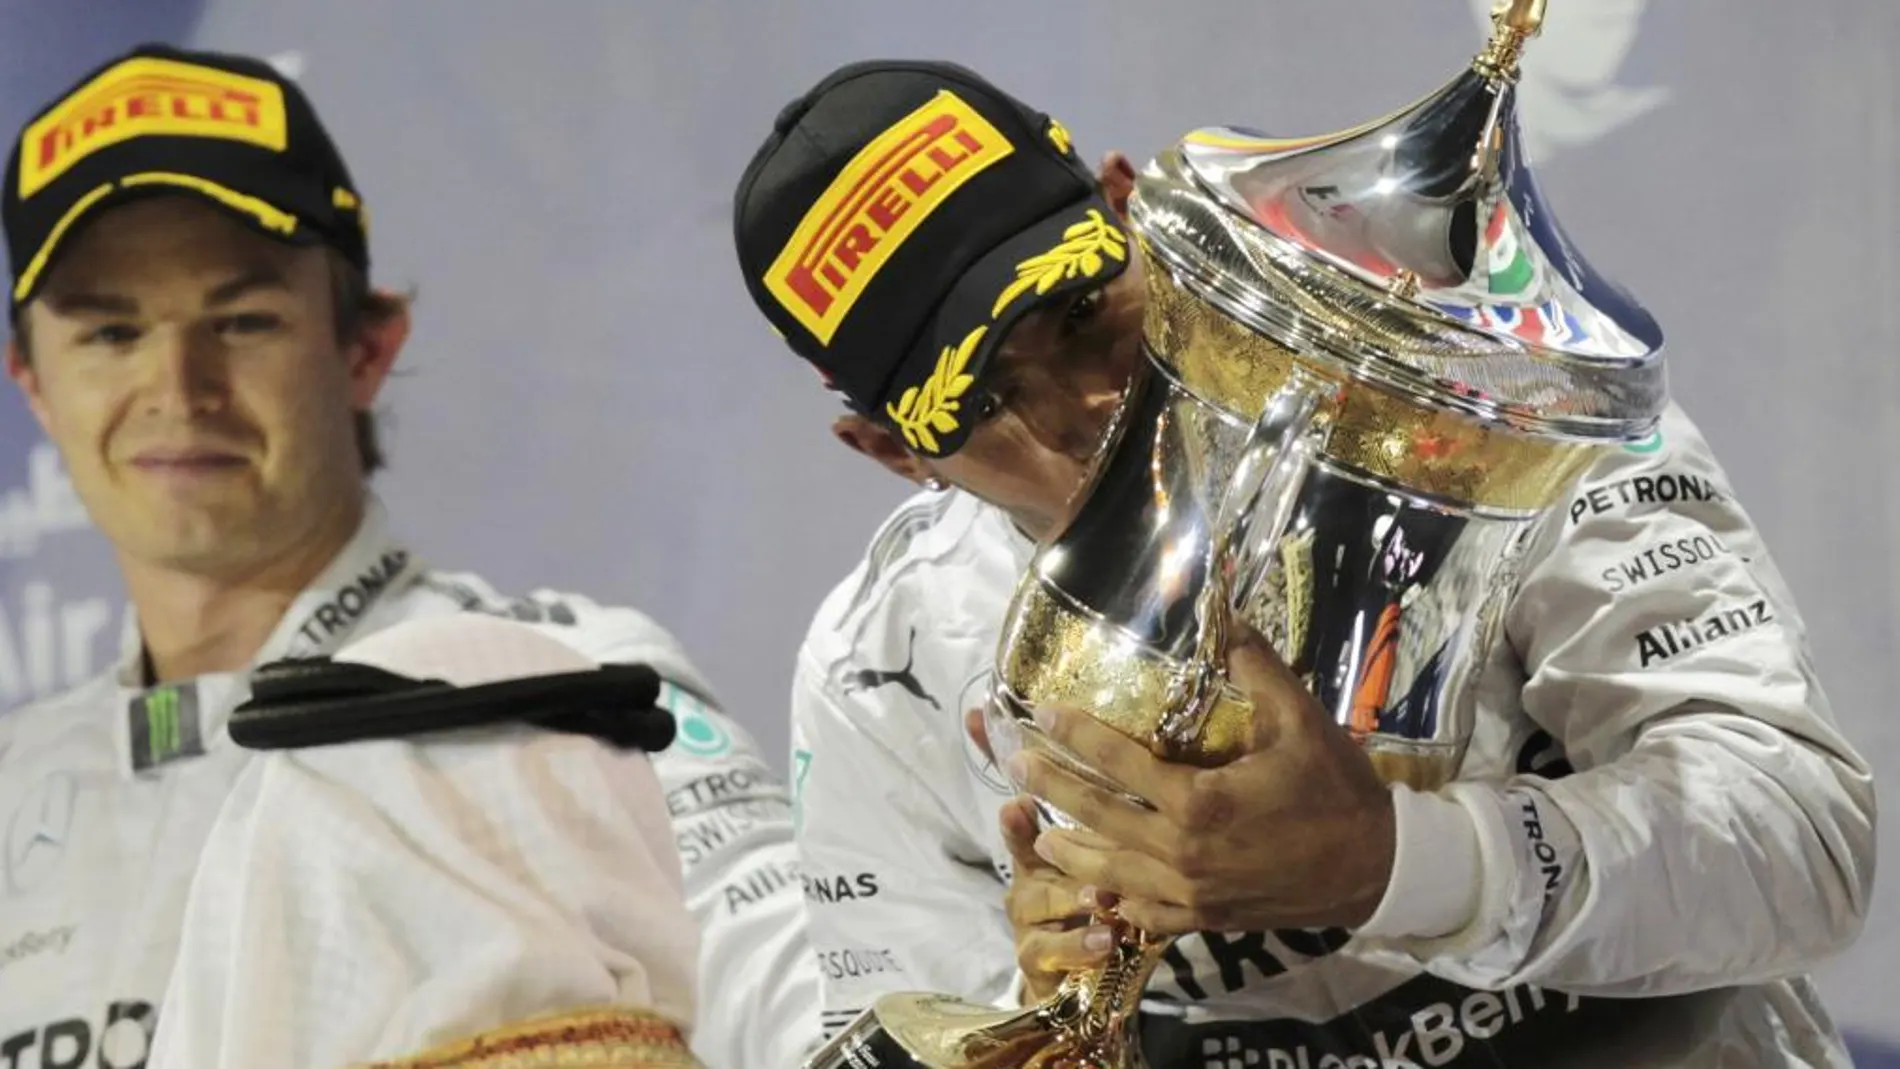 Los pilotos de Mercedes, Rosberg y Hamilton, han ganado todas las carreras en lo que va de temporada